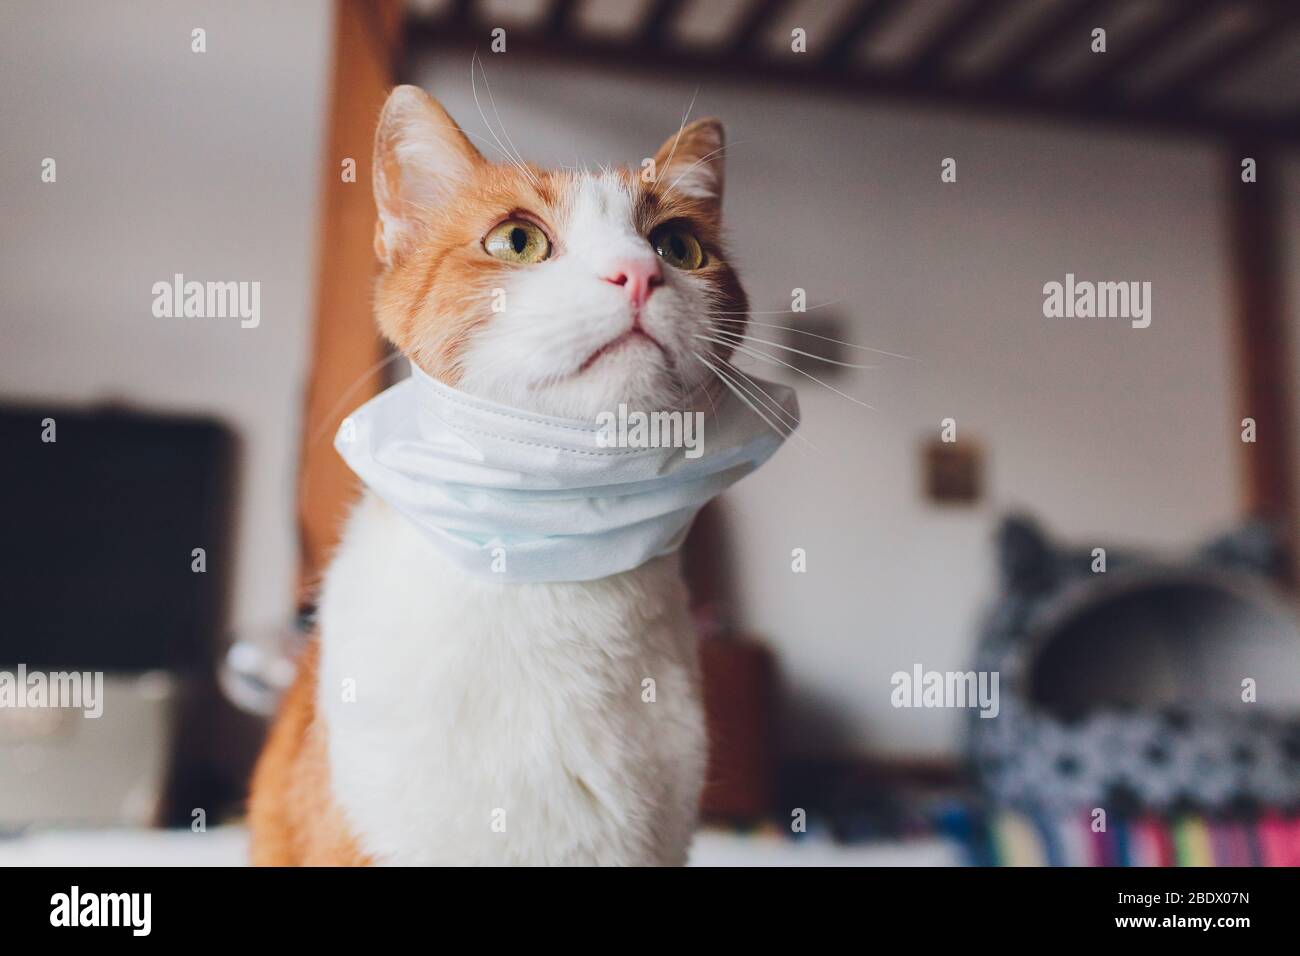 Maschera medica per Cat. Cat. Protetto da virus. Gatto isolato a casa Foto Stock